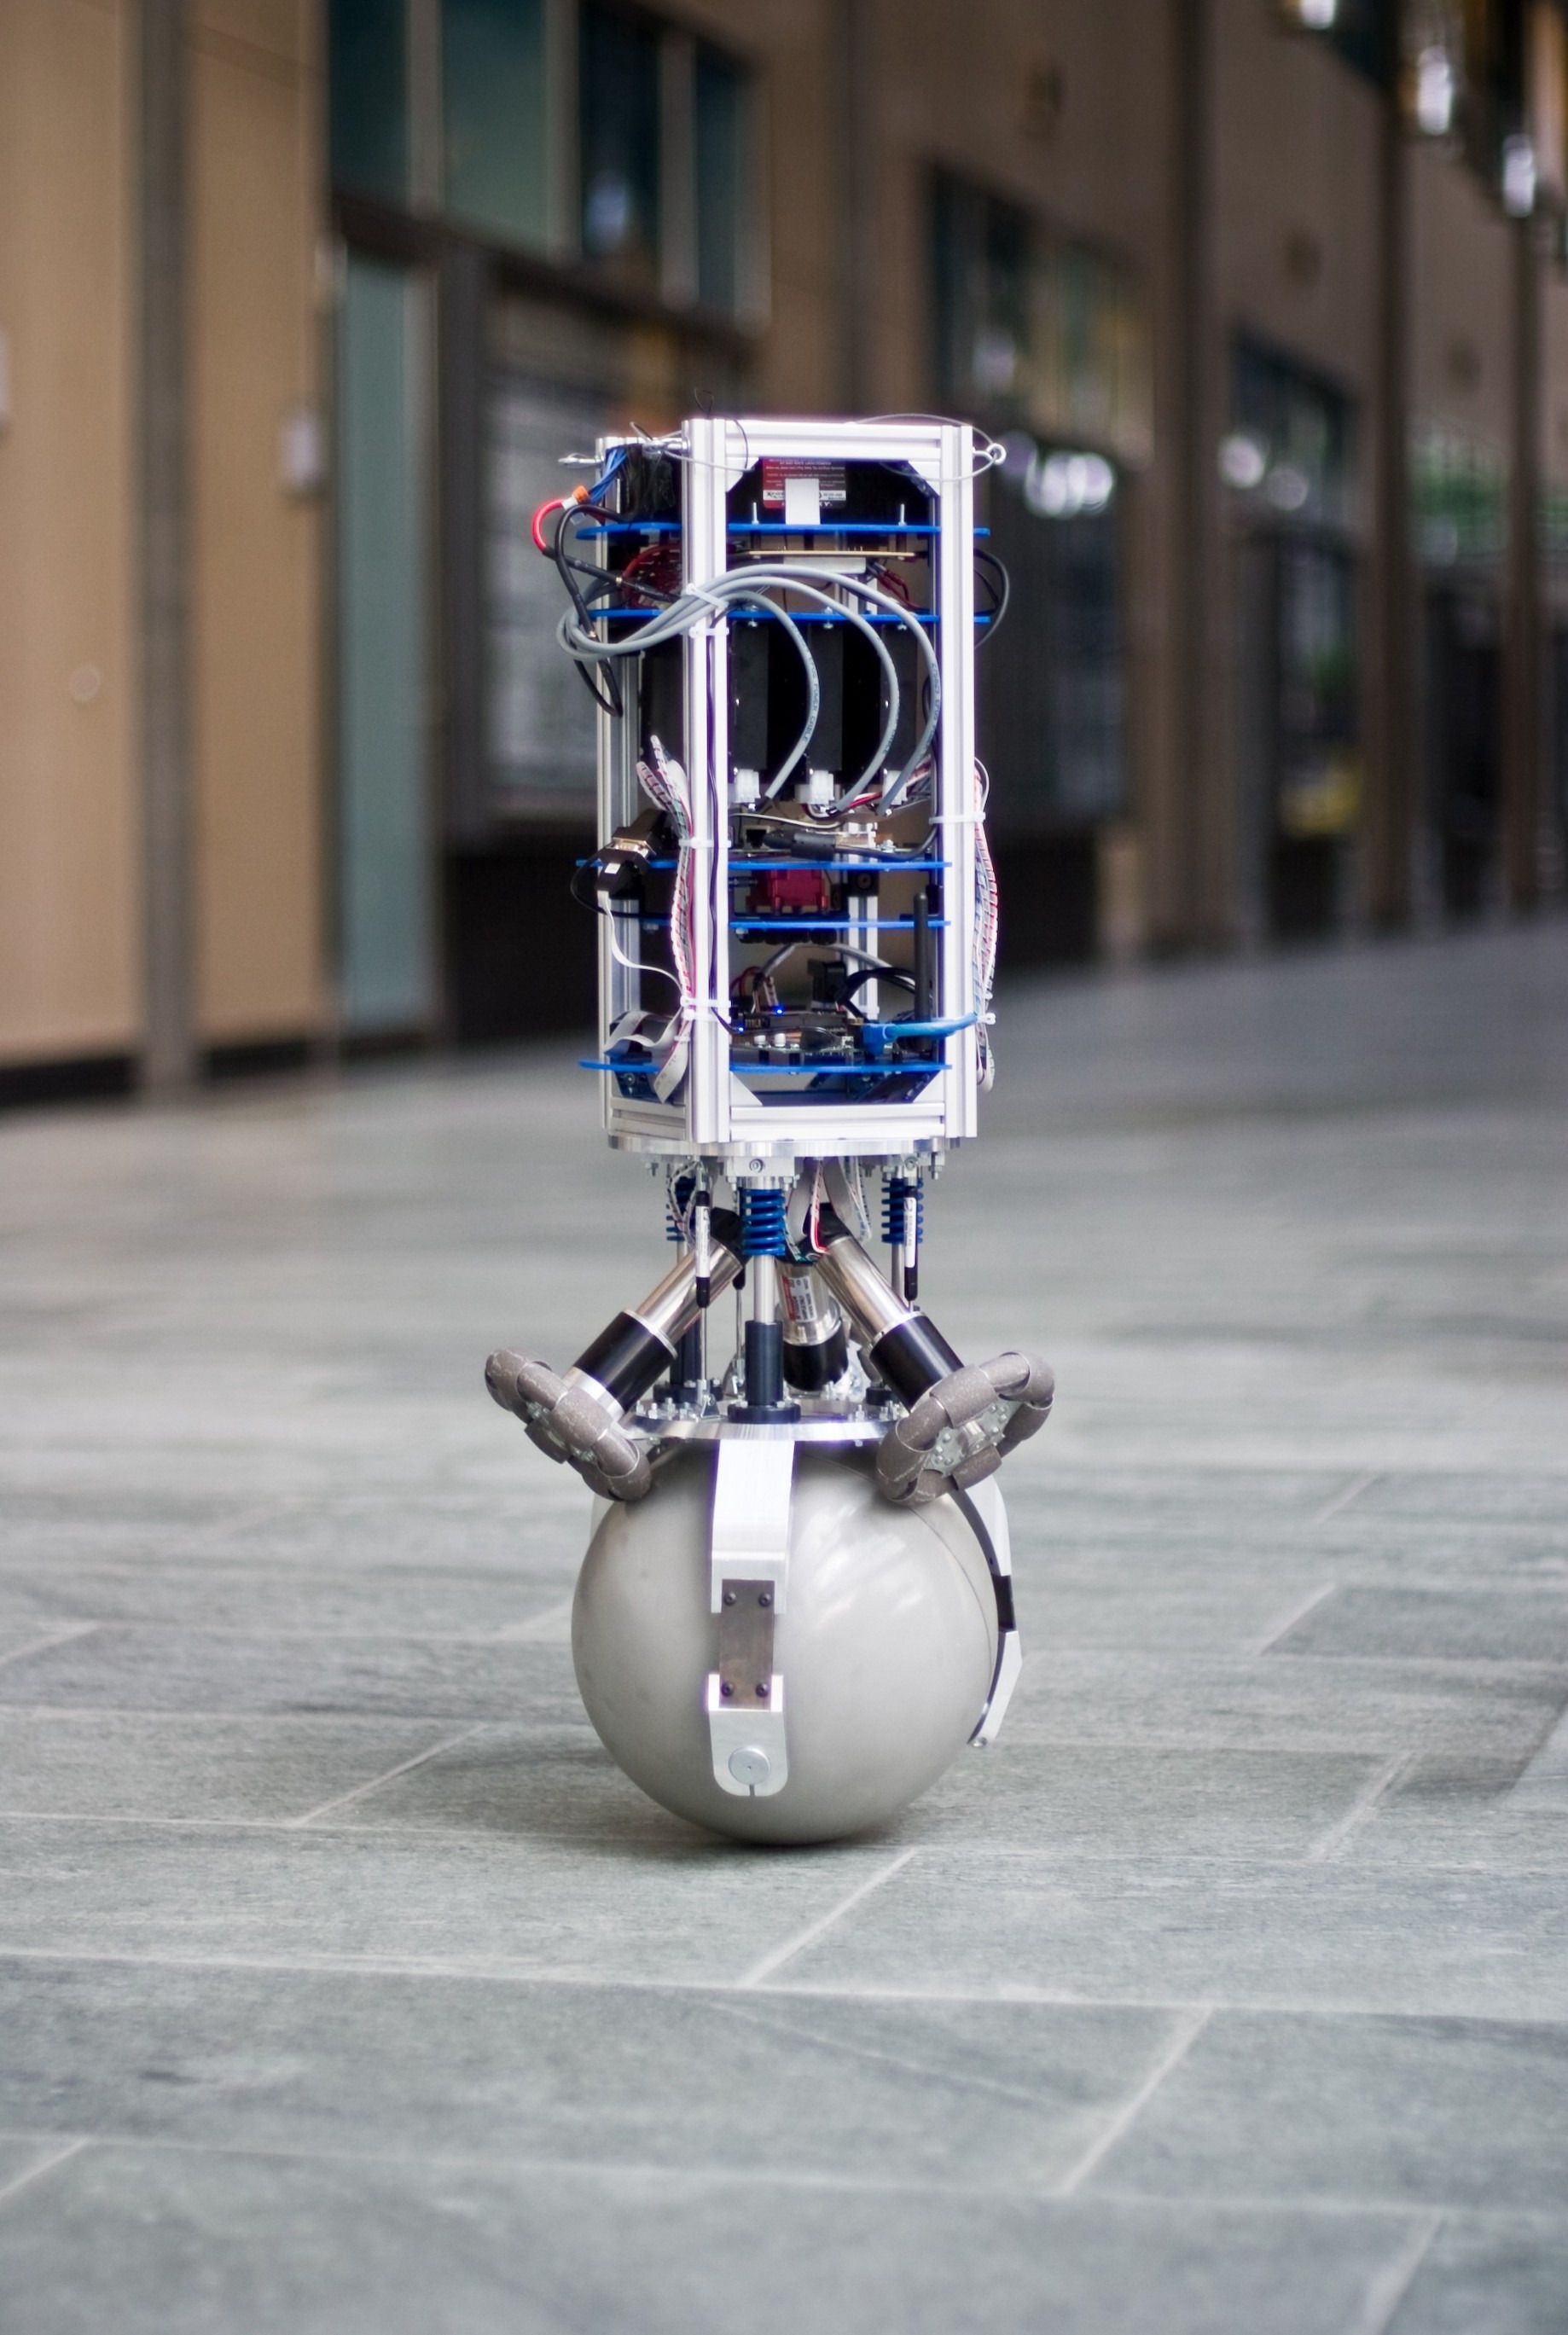 Інженери навчили робота балансувати на кулі. Алгоритм можна використовувати і з іншими роботами, зокрема людиноподібними.